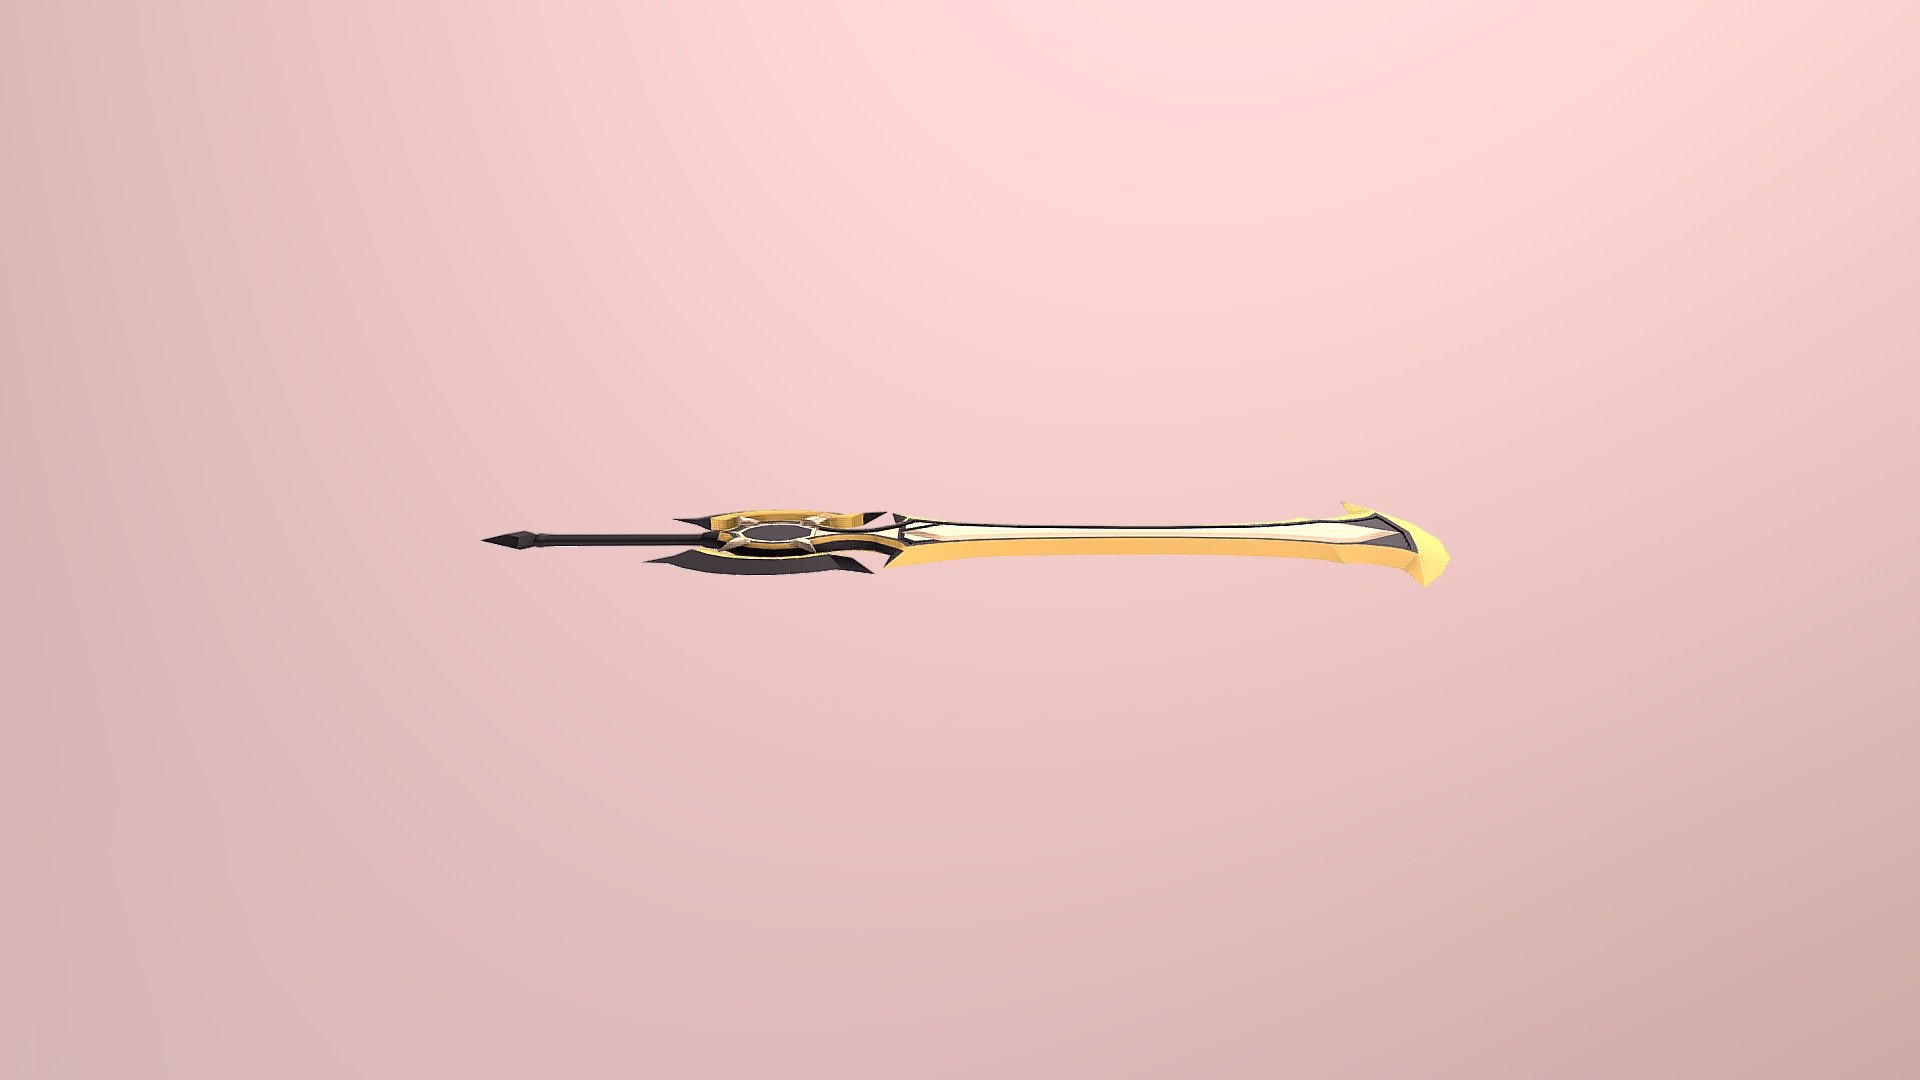 Leona's 2nd Sword